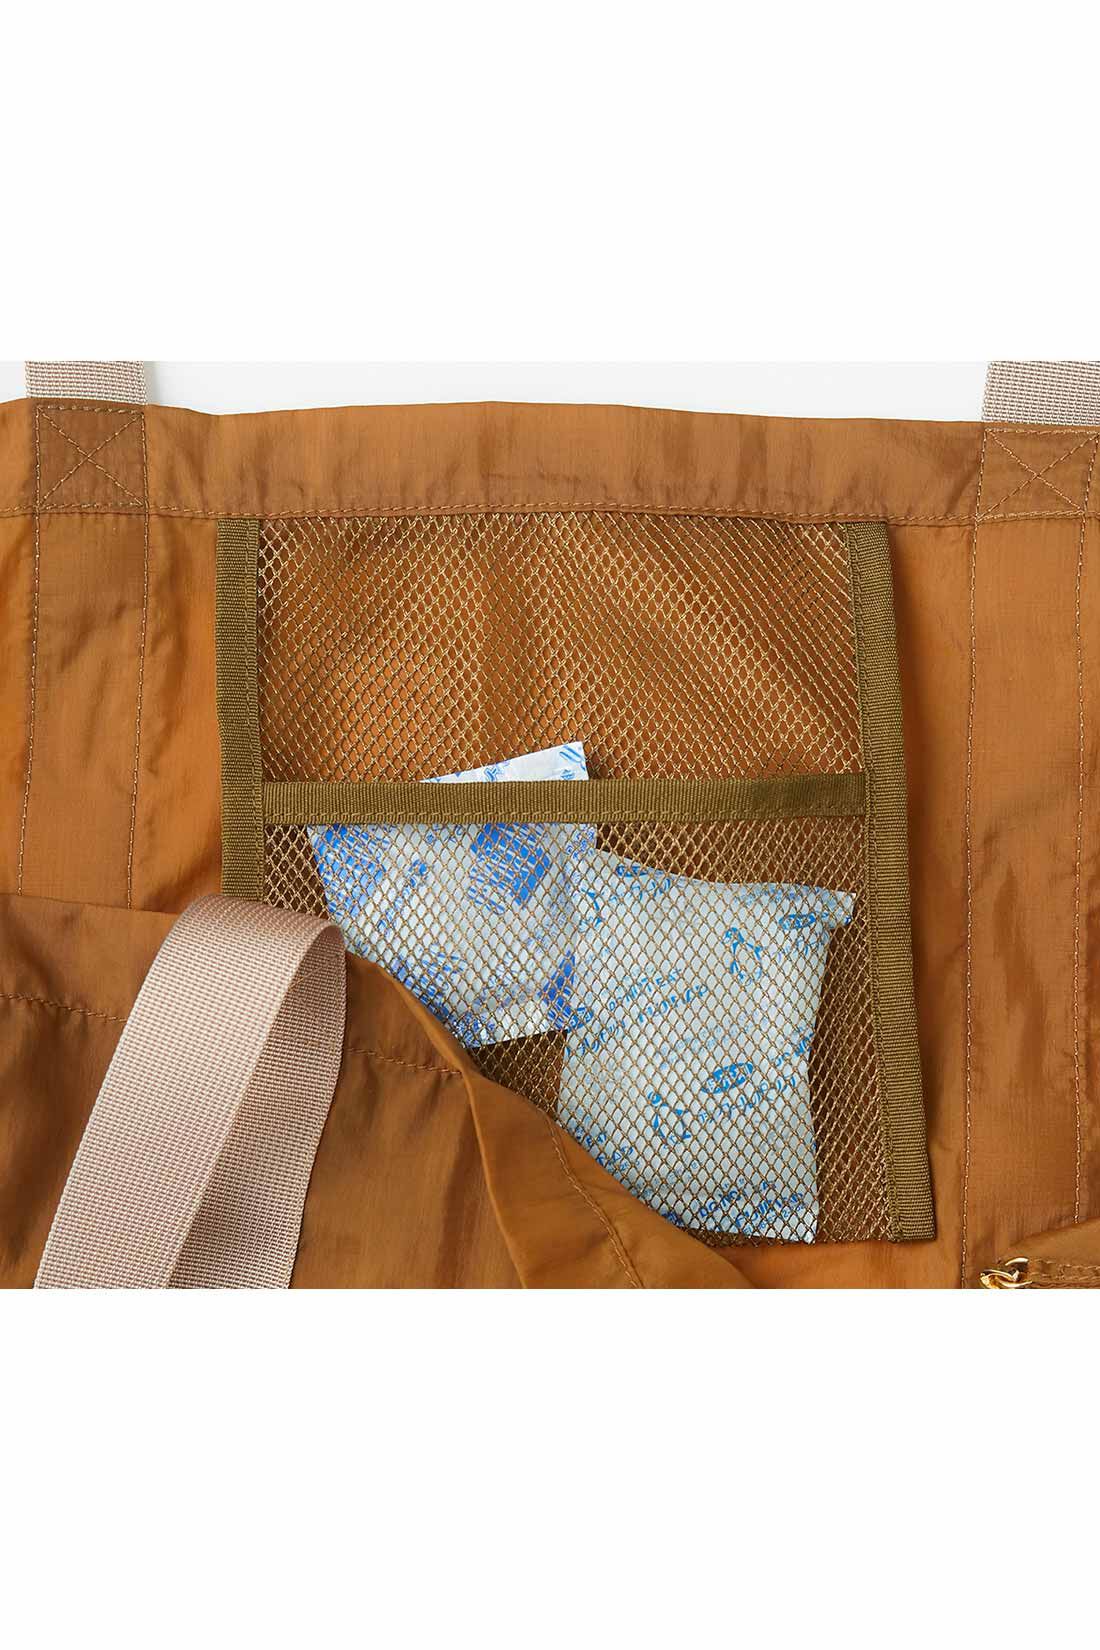 Real Stock|リブ イン コンフォート　はまじとコラボ 肩掛けできてハッとびっくり！ マイレジかごをすっぽり包むラップトートバッグ〈キャメル〉|メッシュ素材の保冷剤ポケット付き。夏のお買い物にもうれしい。